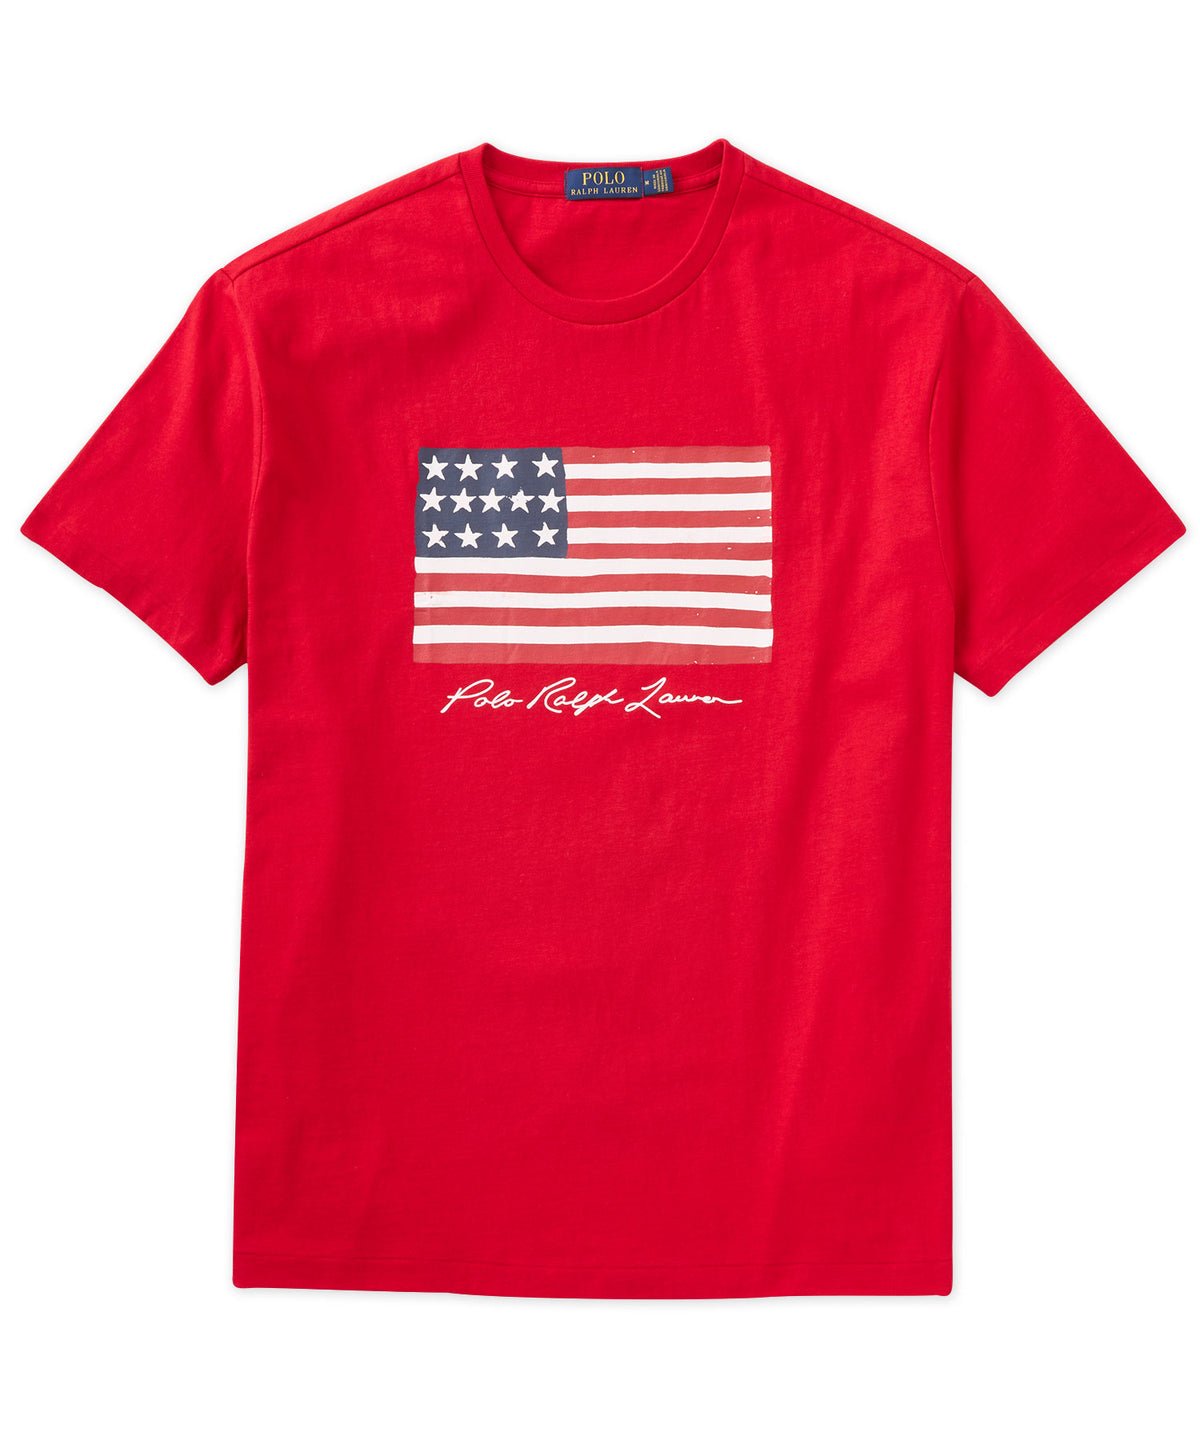 Polo Ralph Lauren Short Sleeve American Flag T-Shirt - Westport